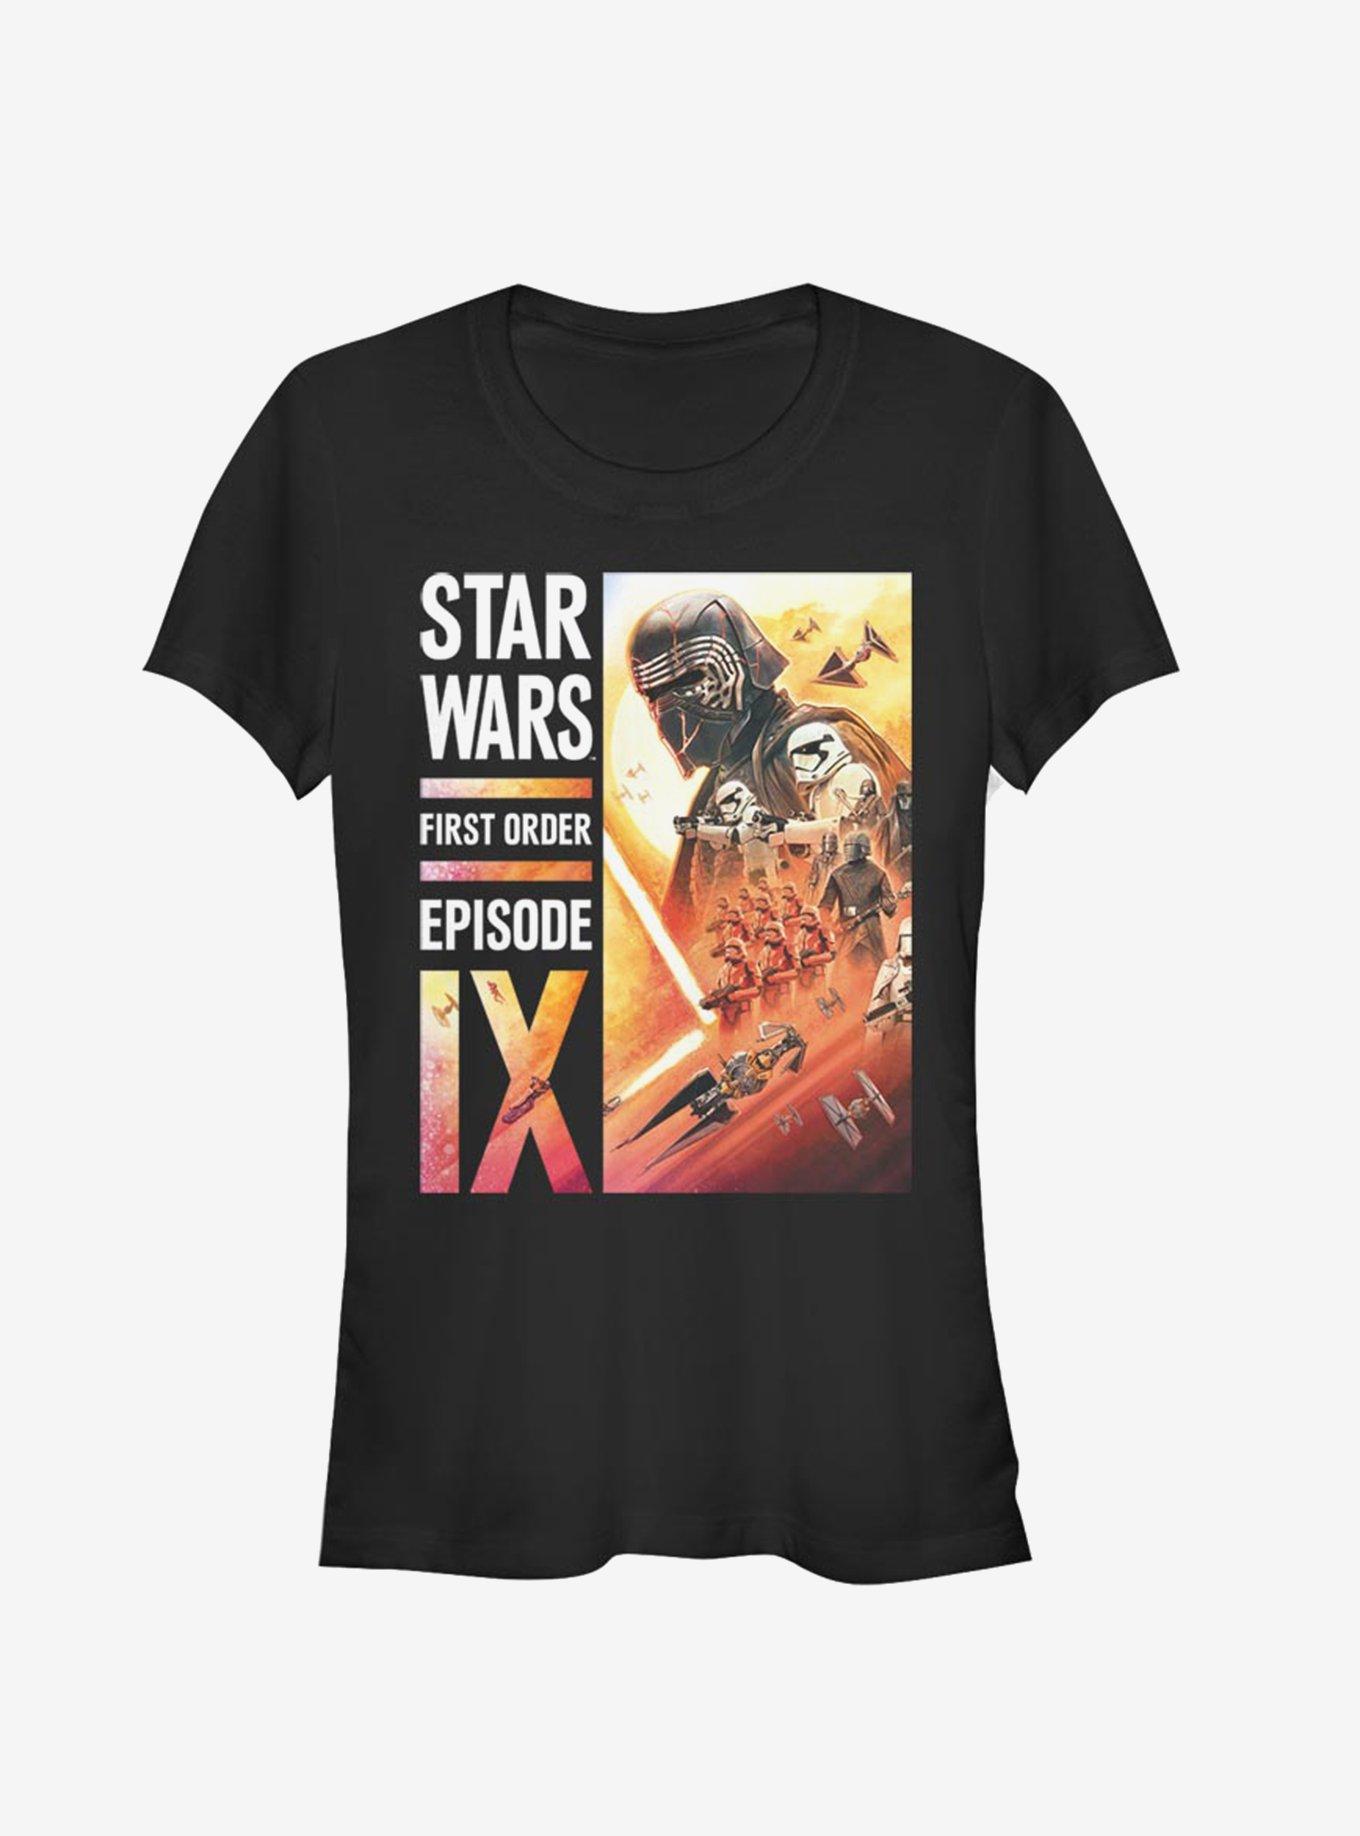 Star Wars Episode IX The Rise Of Skywalker First Order Collage Girls T-Shirt, BLACK, hi-res